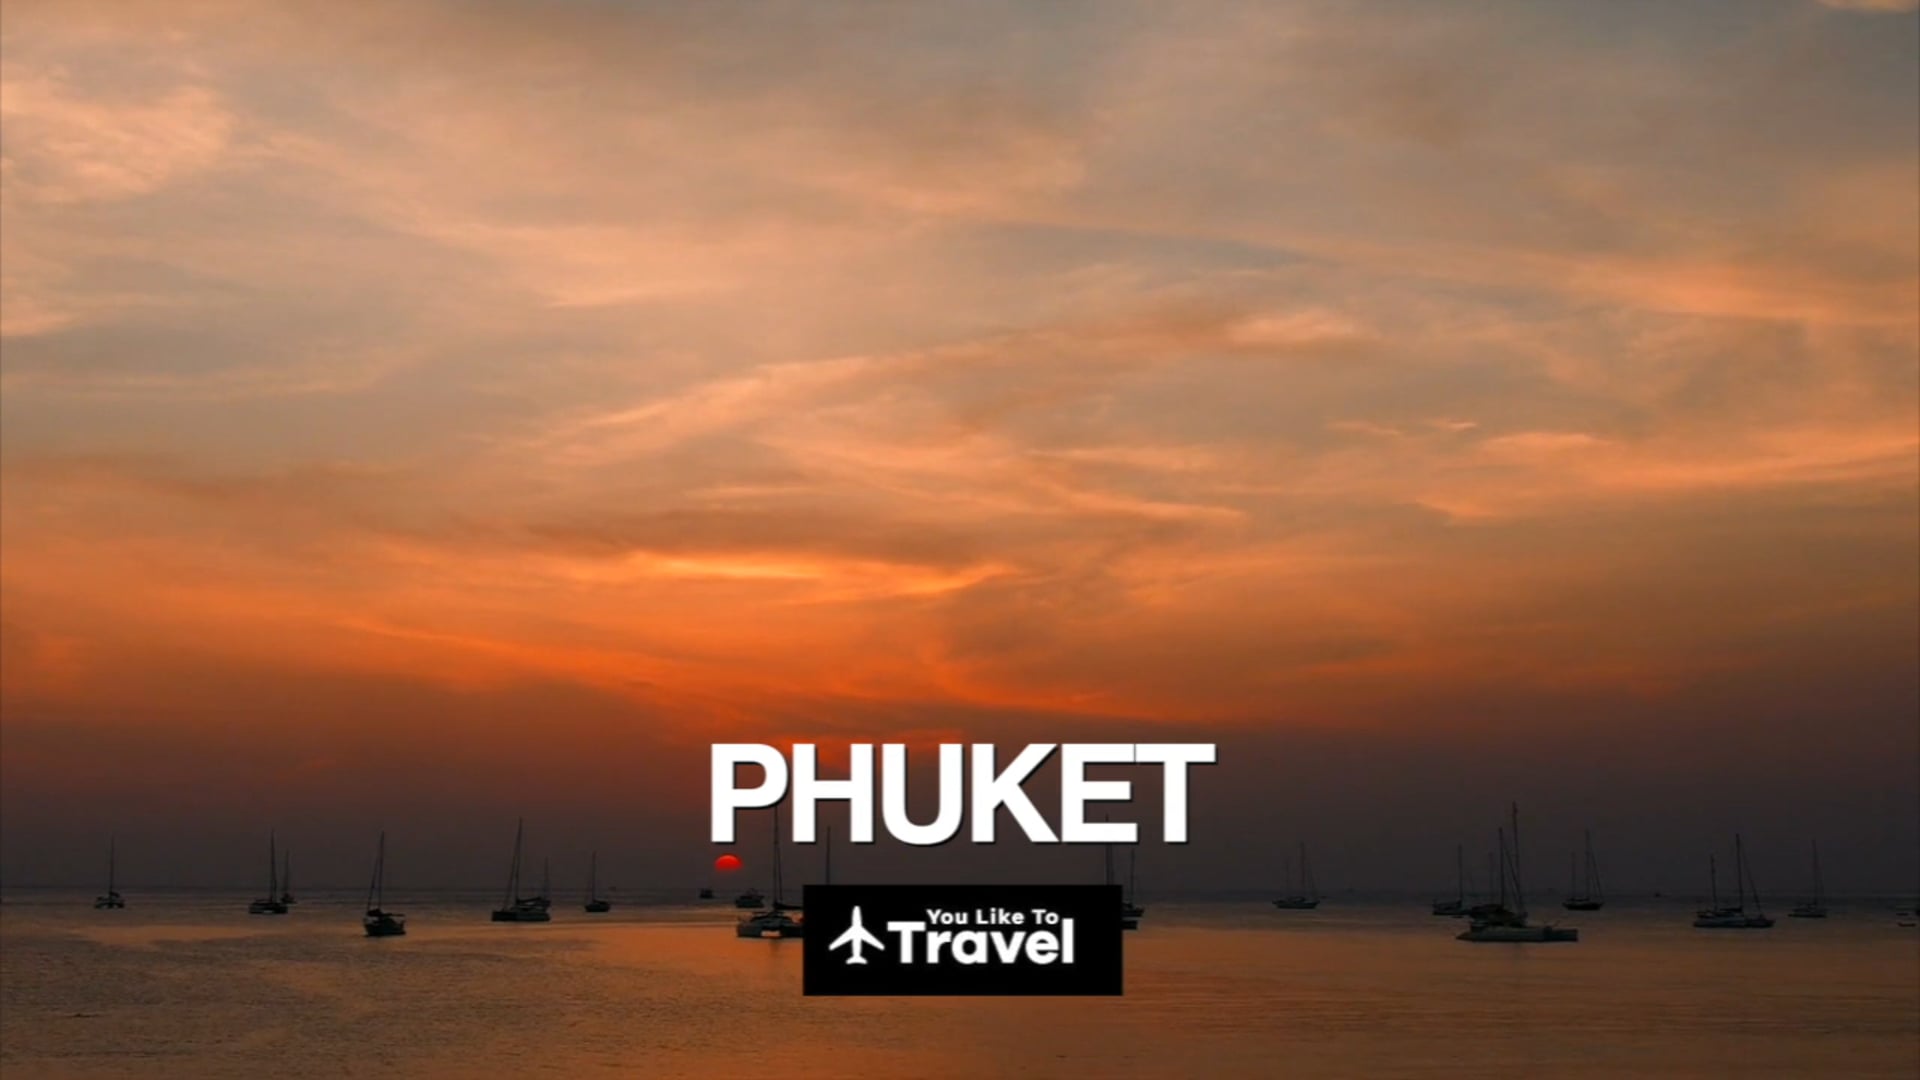 Travel to Phuket